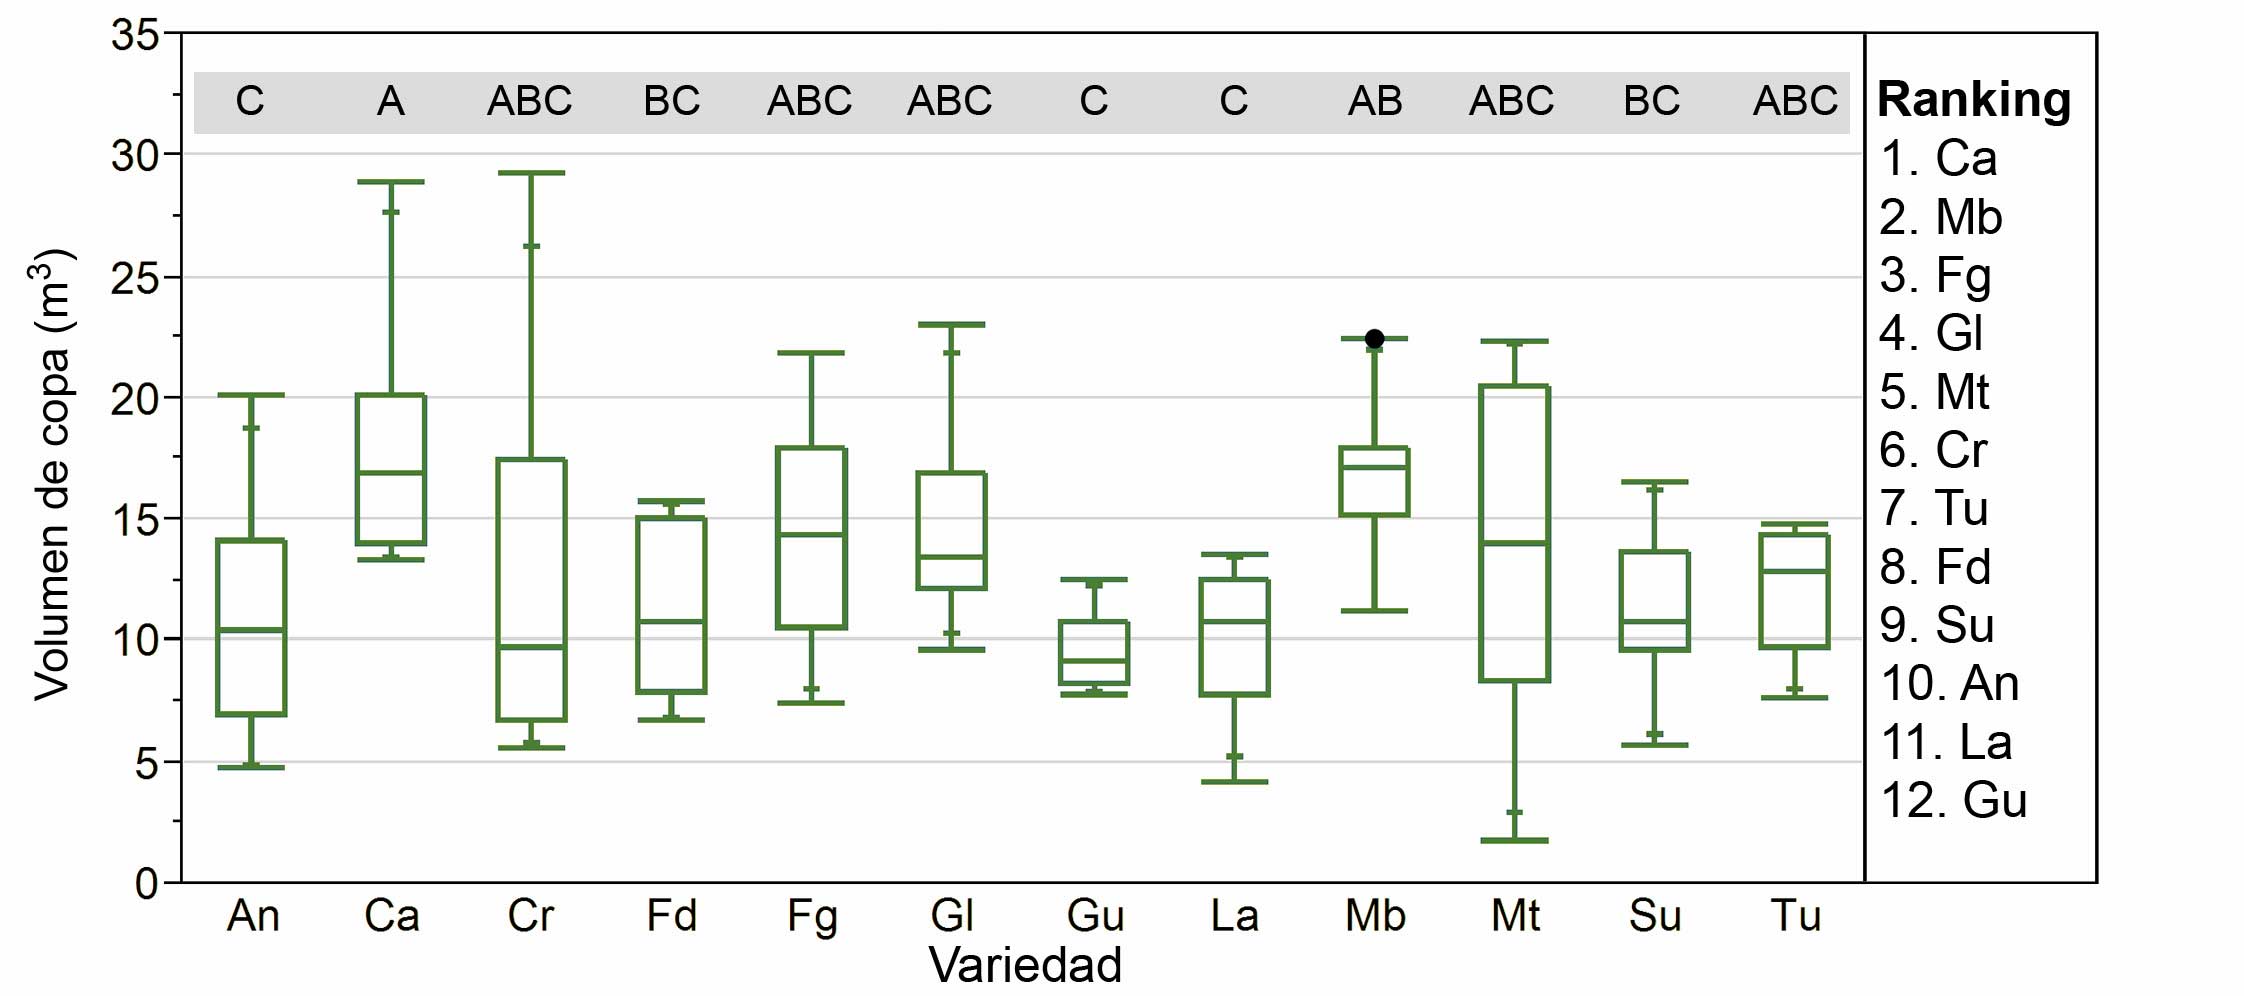 Figura 2. Grfico de cajas de bigotes mostrando el volumen estimado para cada variedad en una de las fechas en el campo 1...